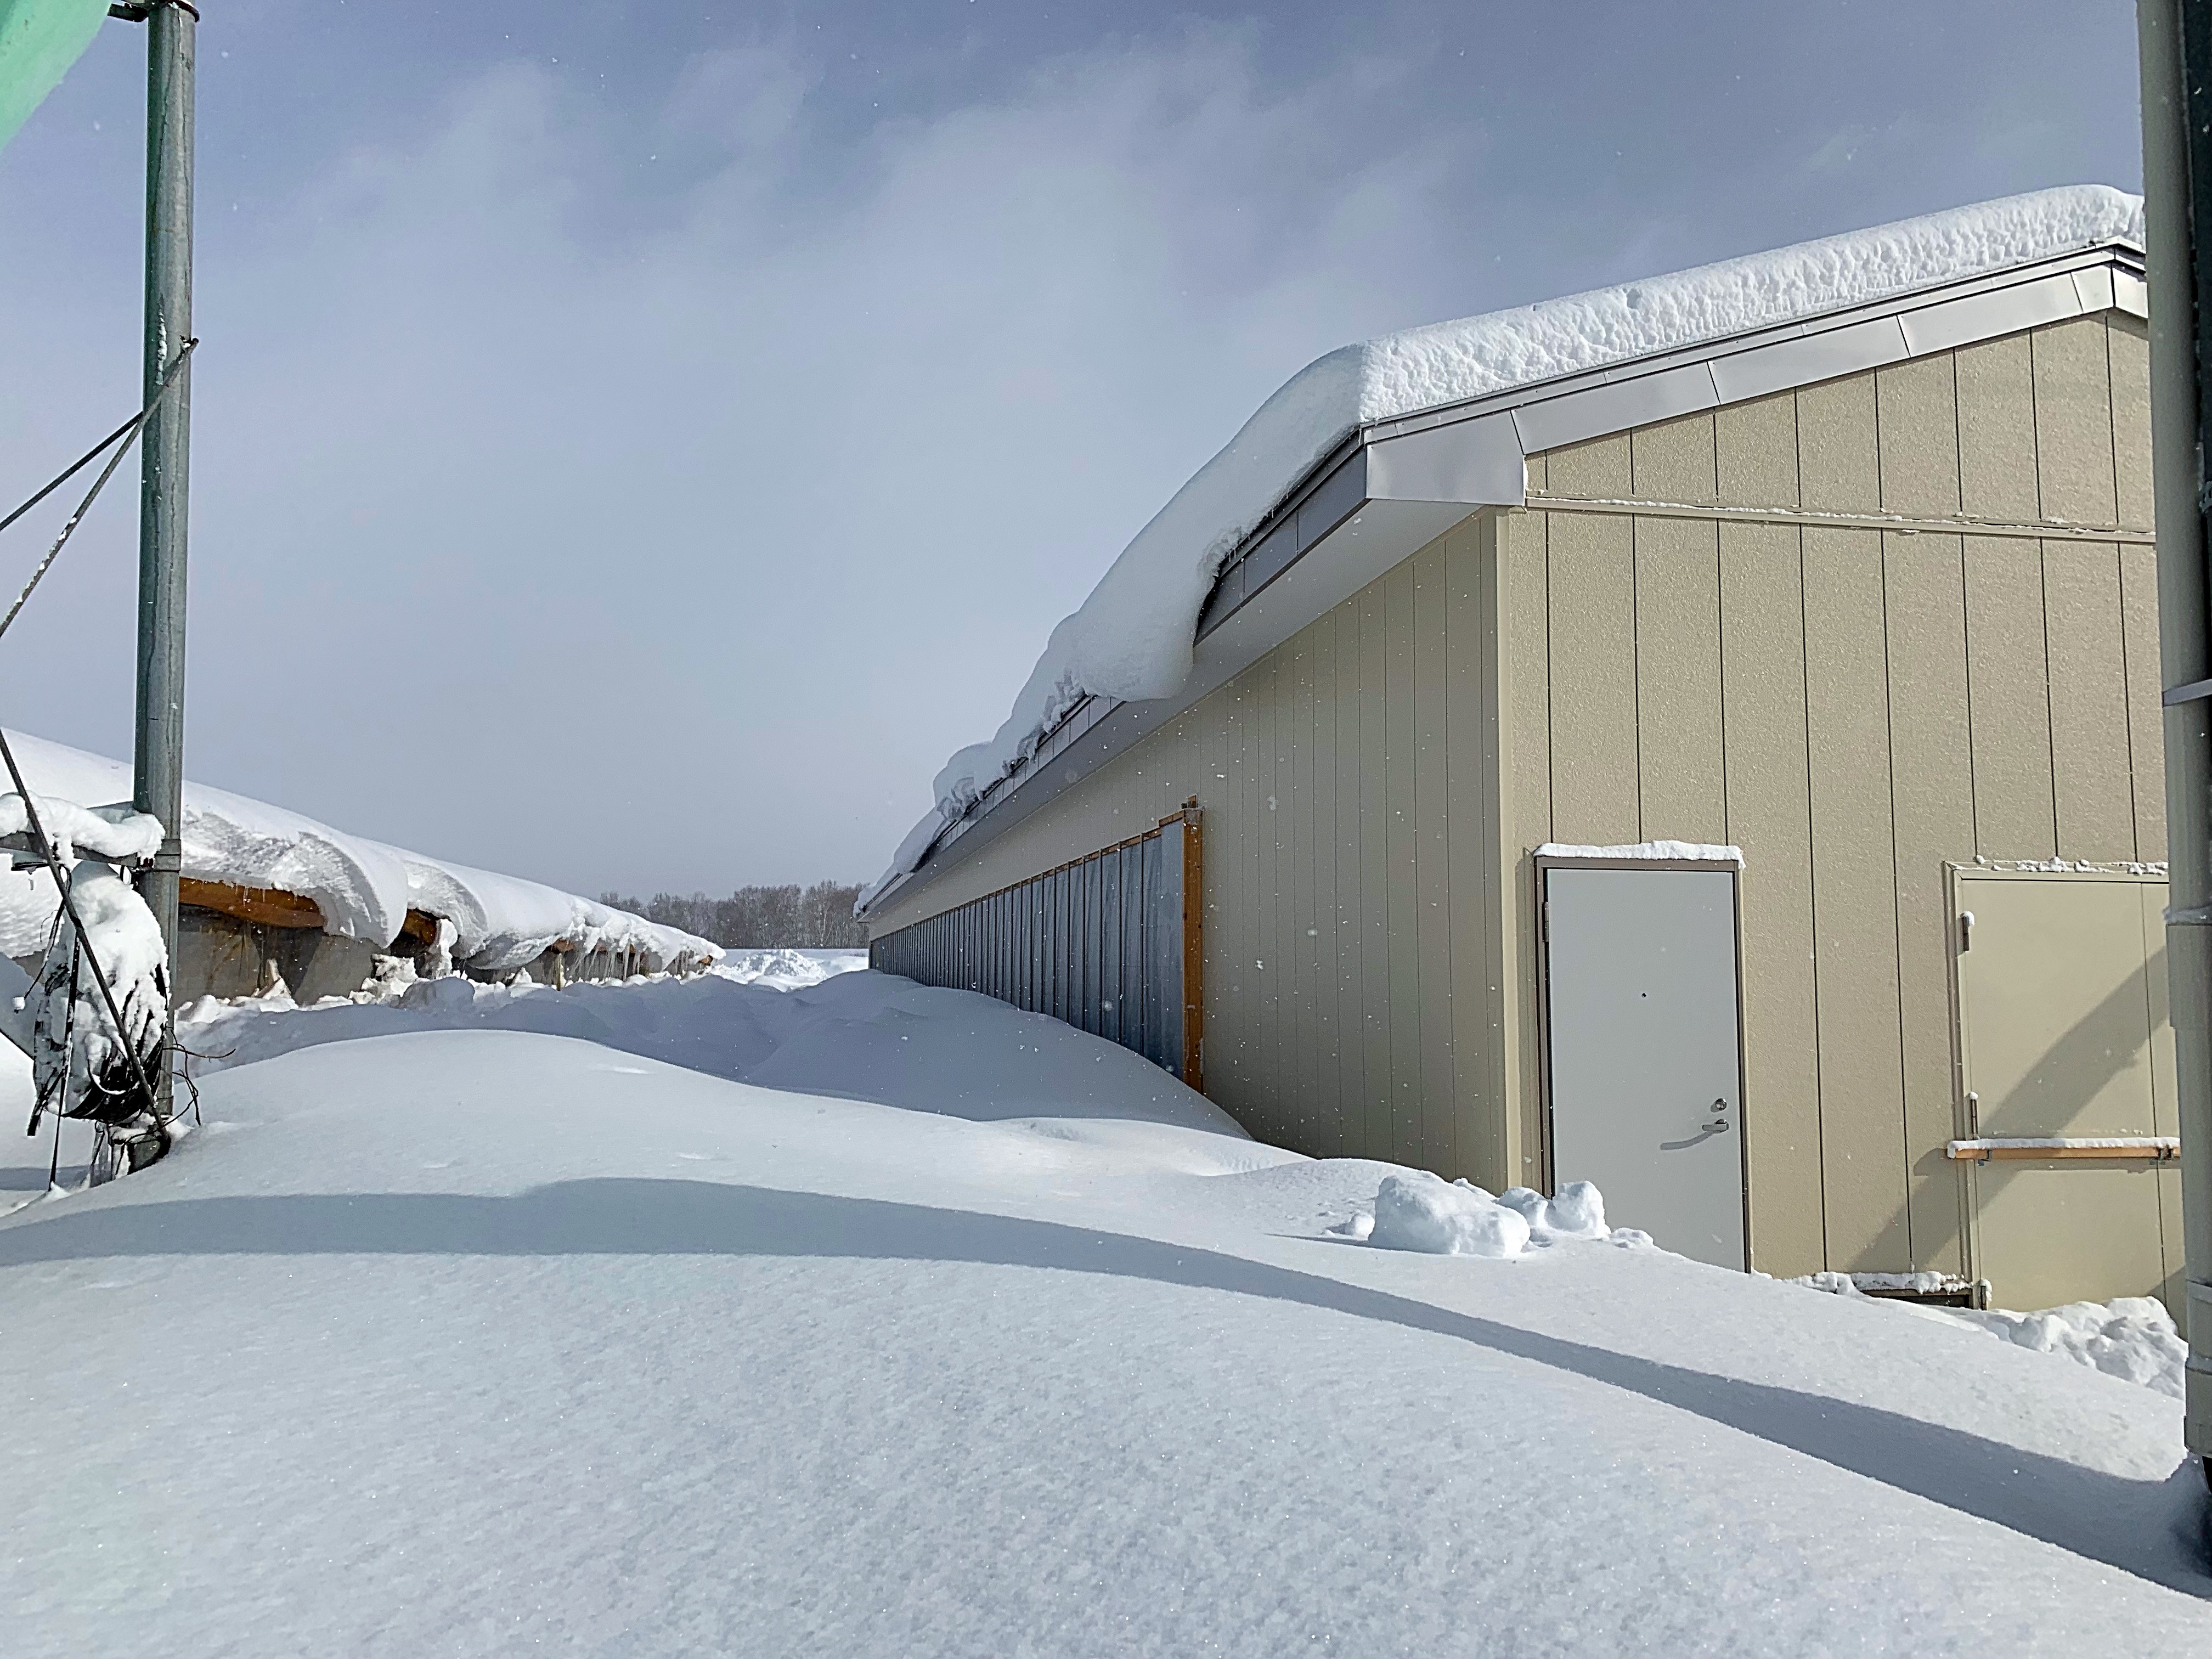 昨日の暴風雪により、降雪量が一気に多くなった。-ブログ|社長のブログ | 大熊養鶏場